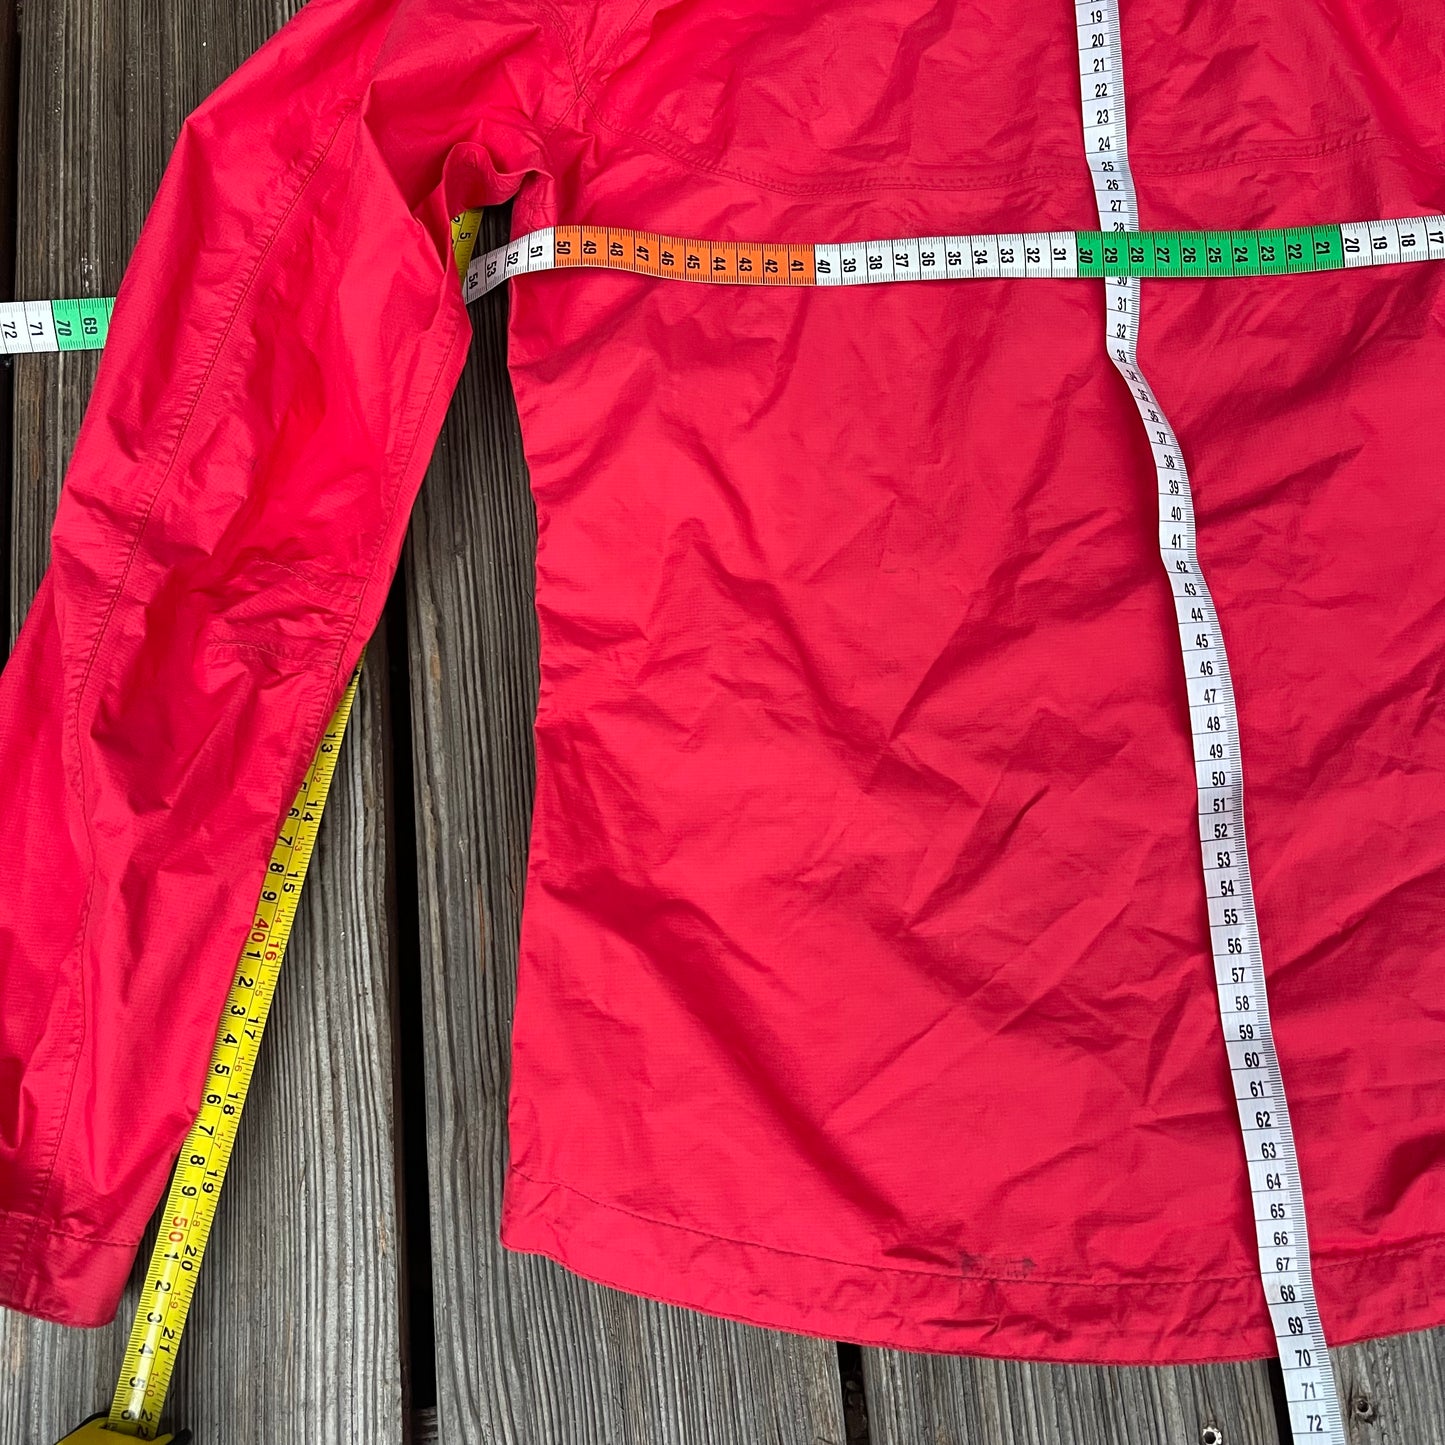 Alpine Extreme Regen- Jacke von Salewa (M Damen) rot